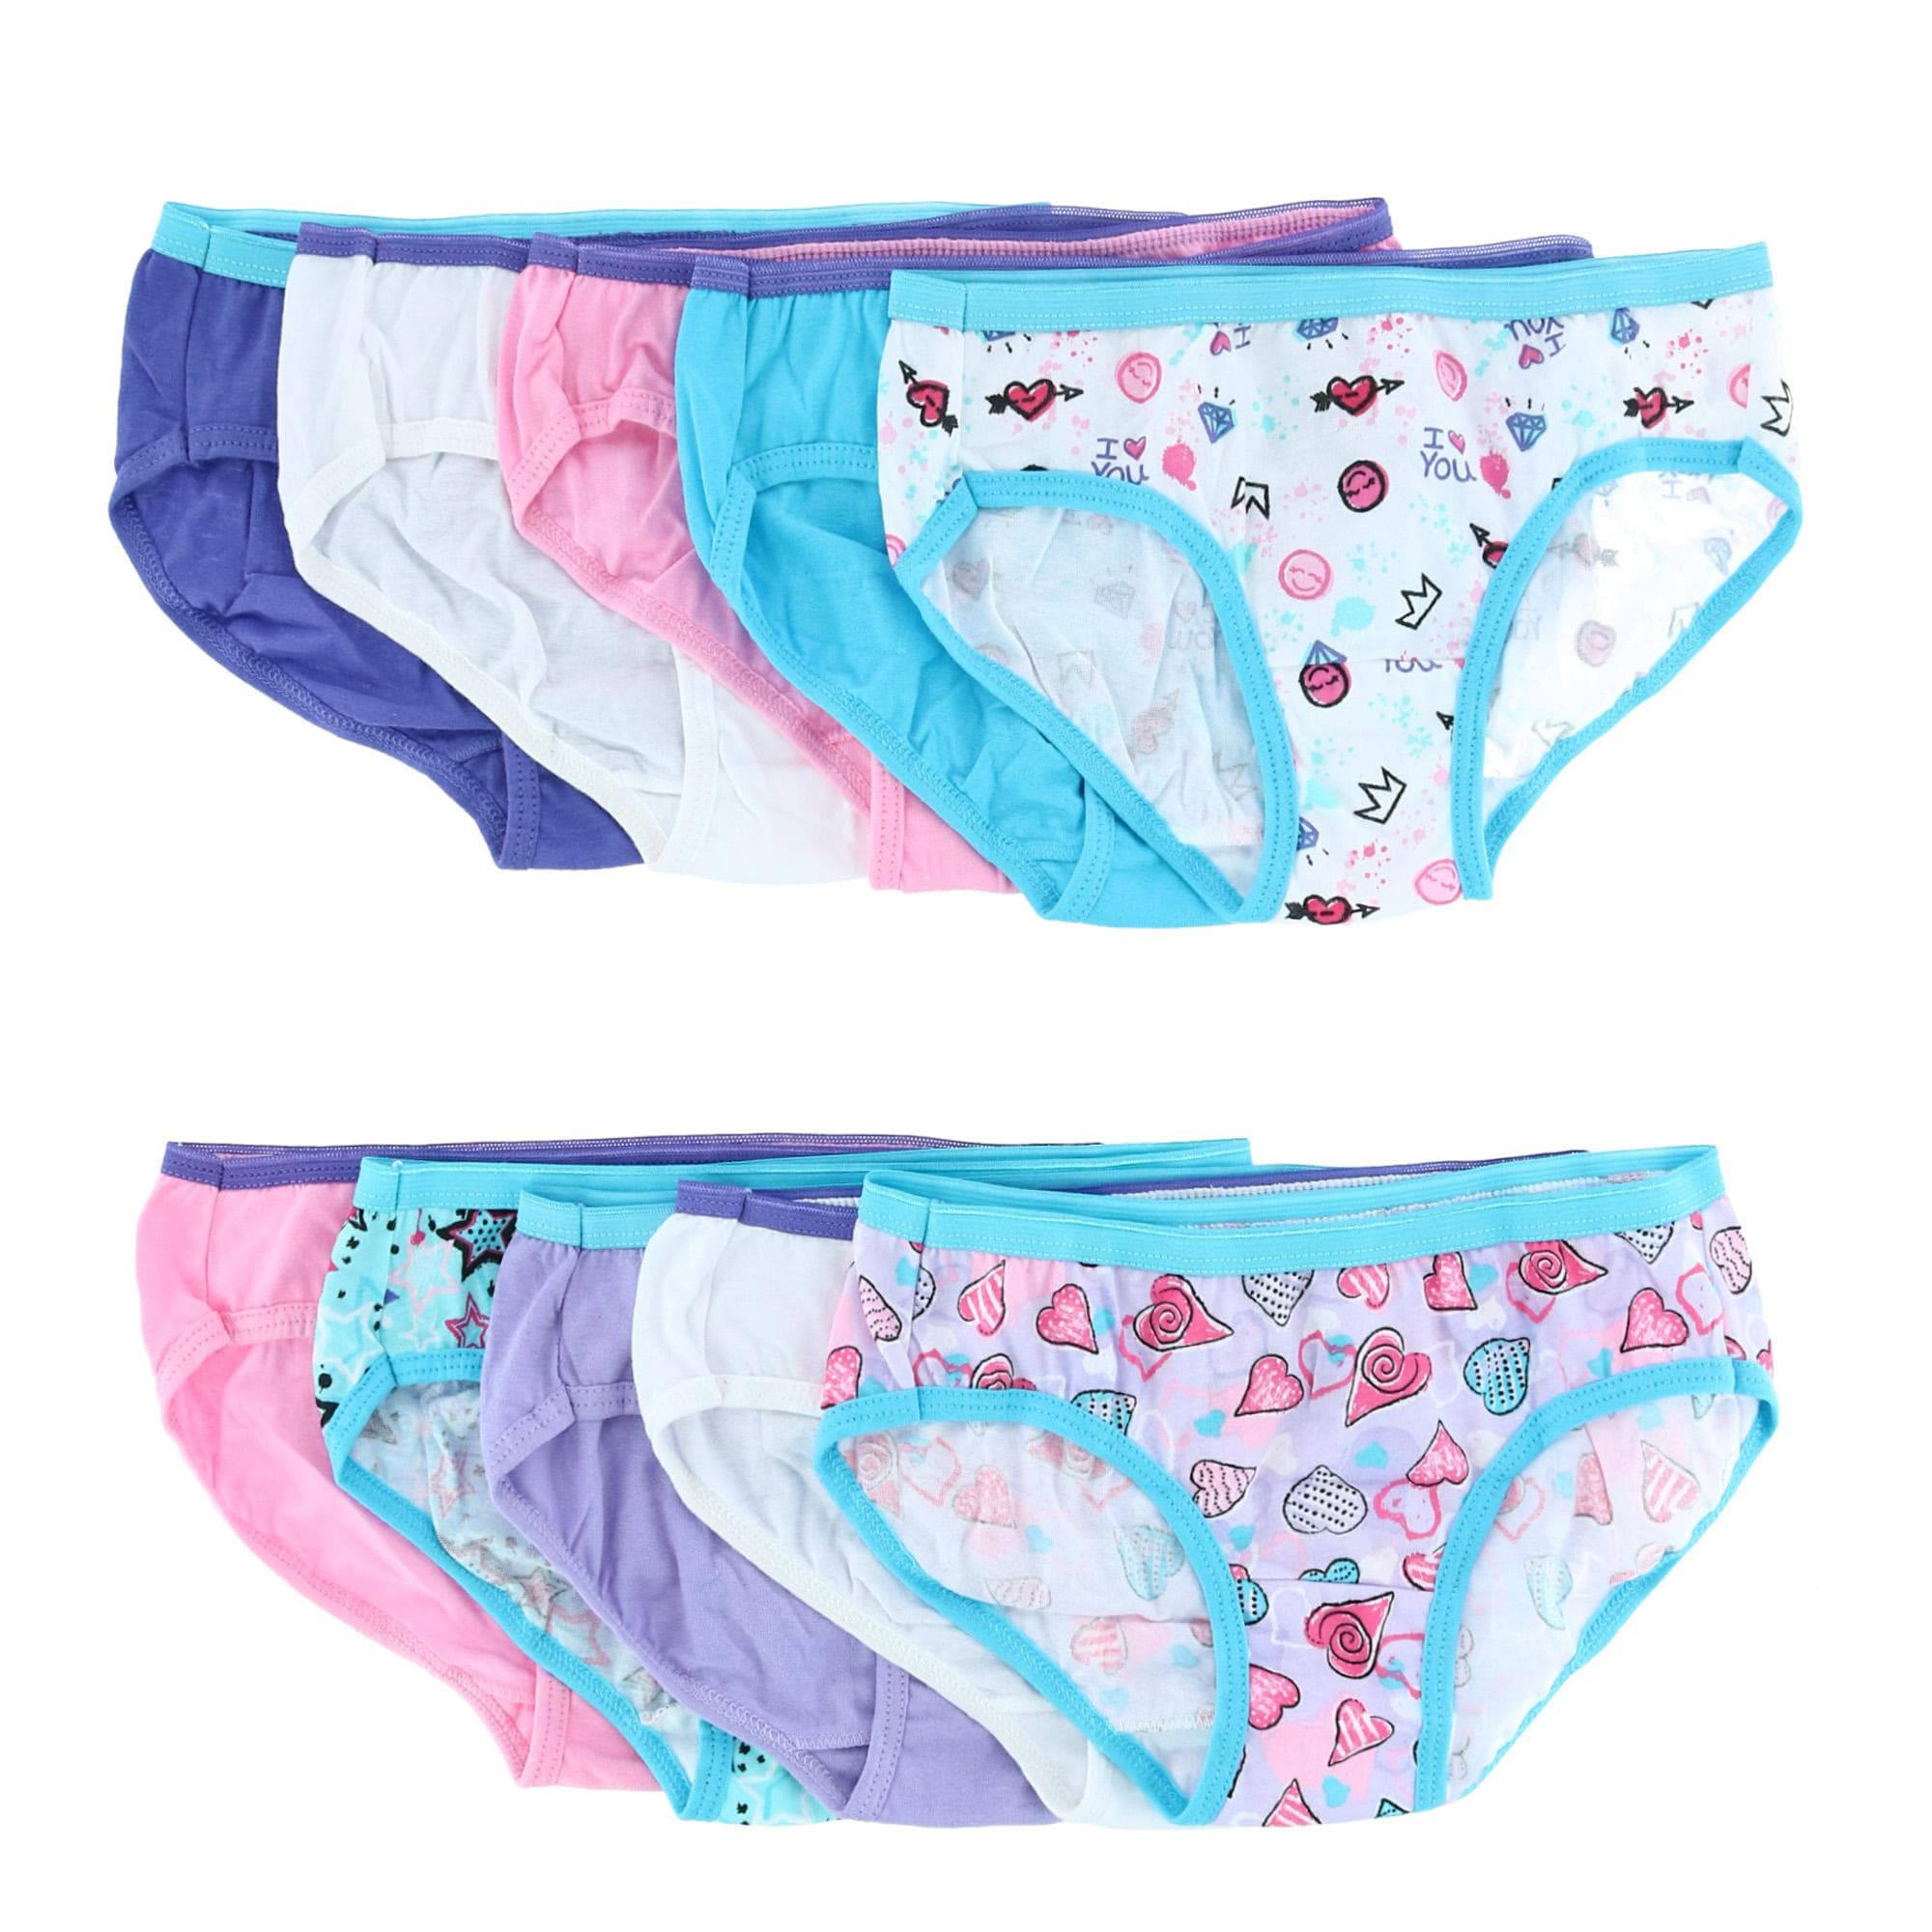 Hanes Girls' Cotton Bikini Underwear, 10-Pack